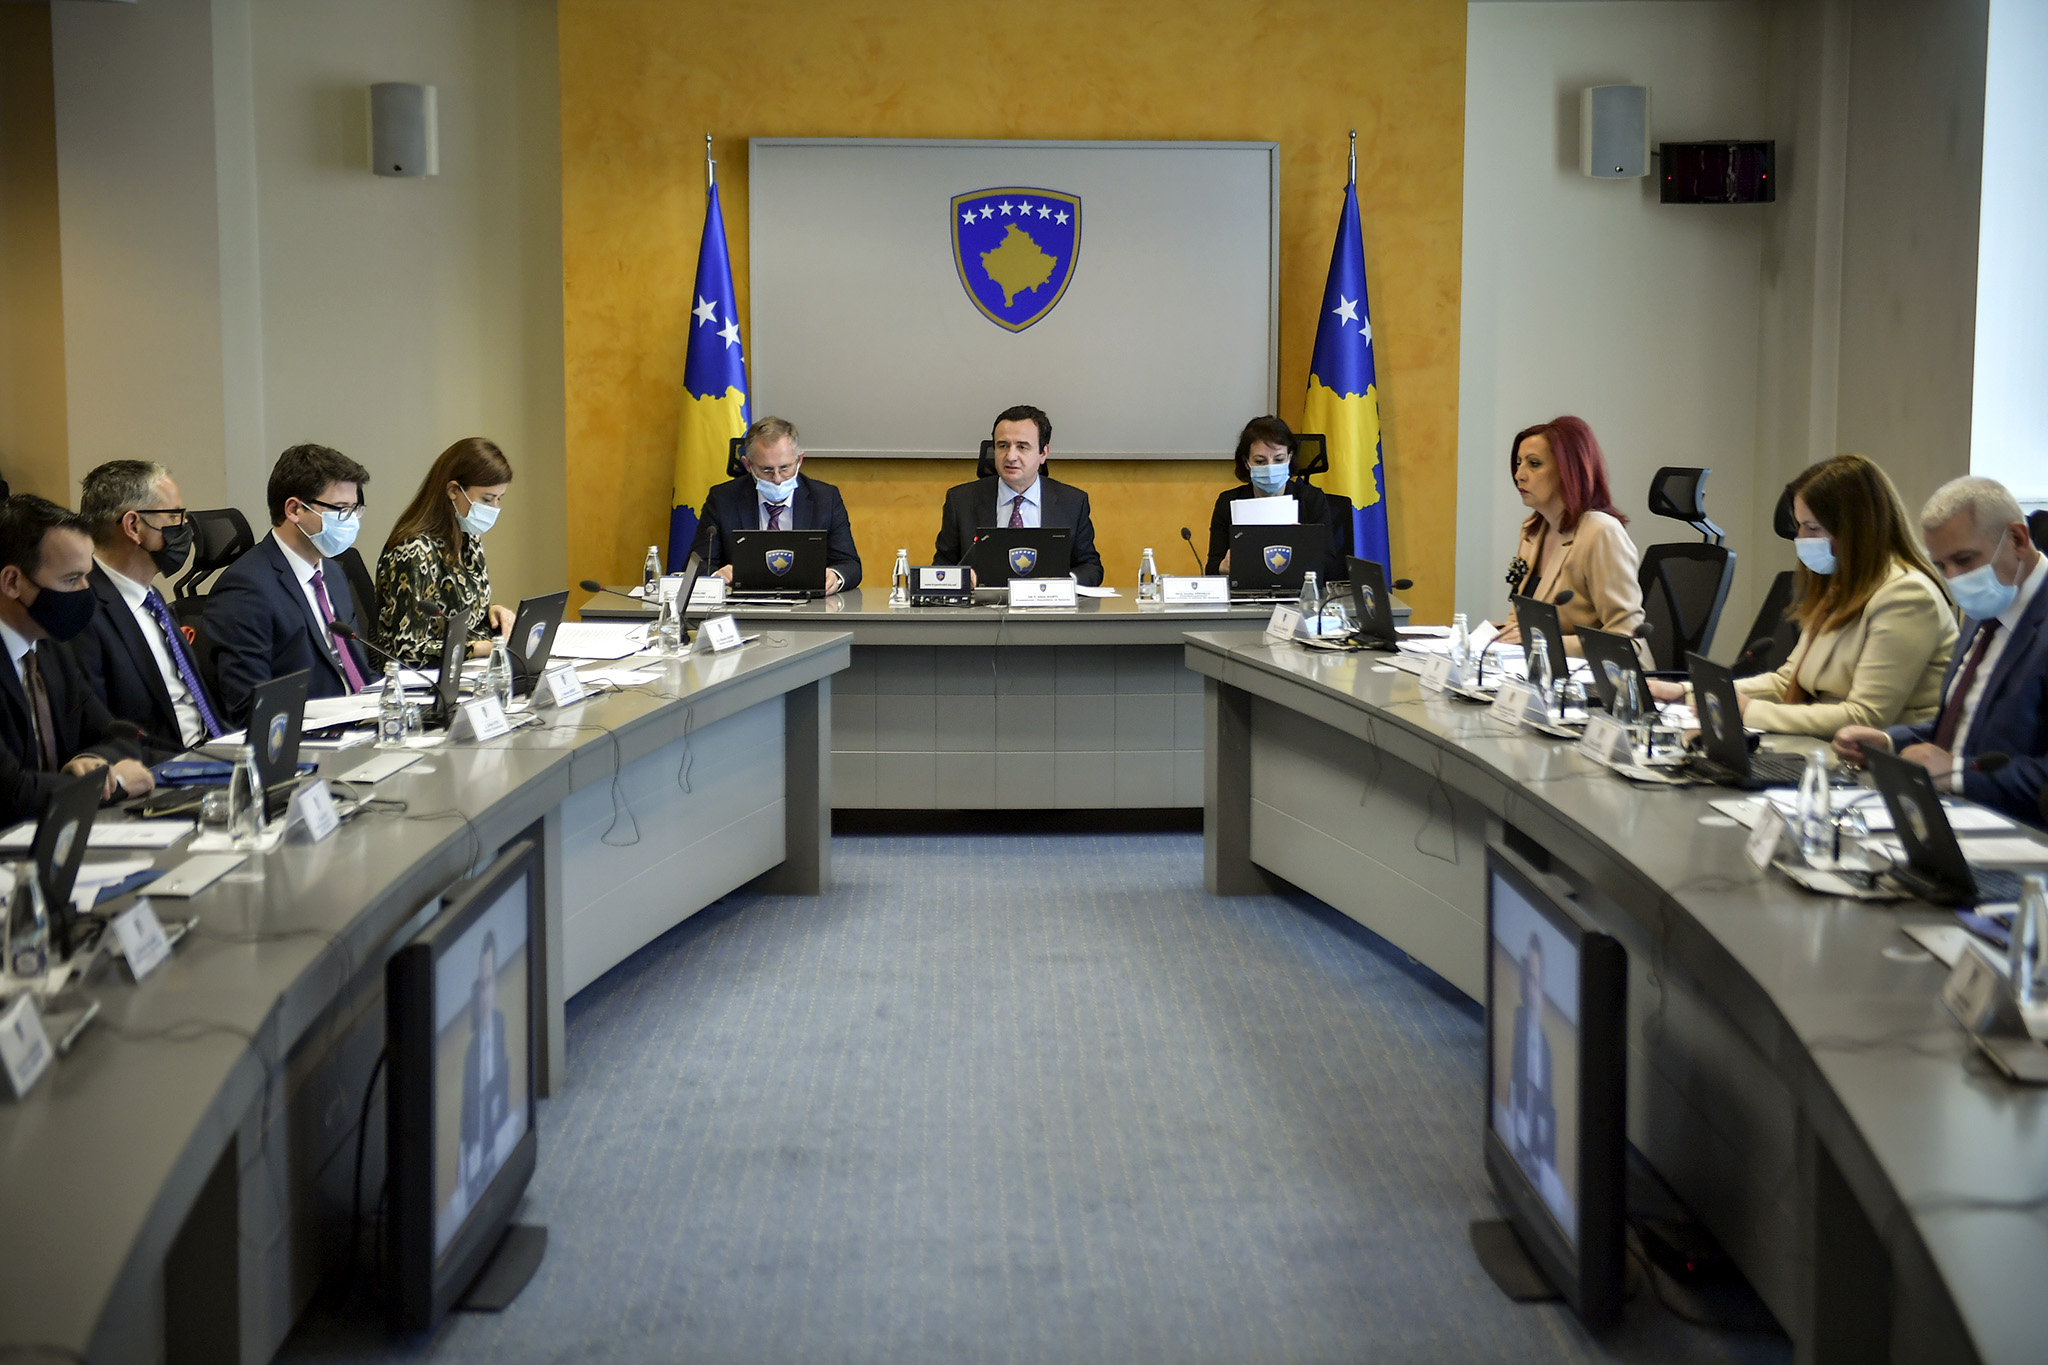 Dënohet bojkoti serb/ Qeveria e Kosovës kërkon heqjen e masave ndëshkuese, reagon edhe BE!